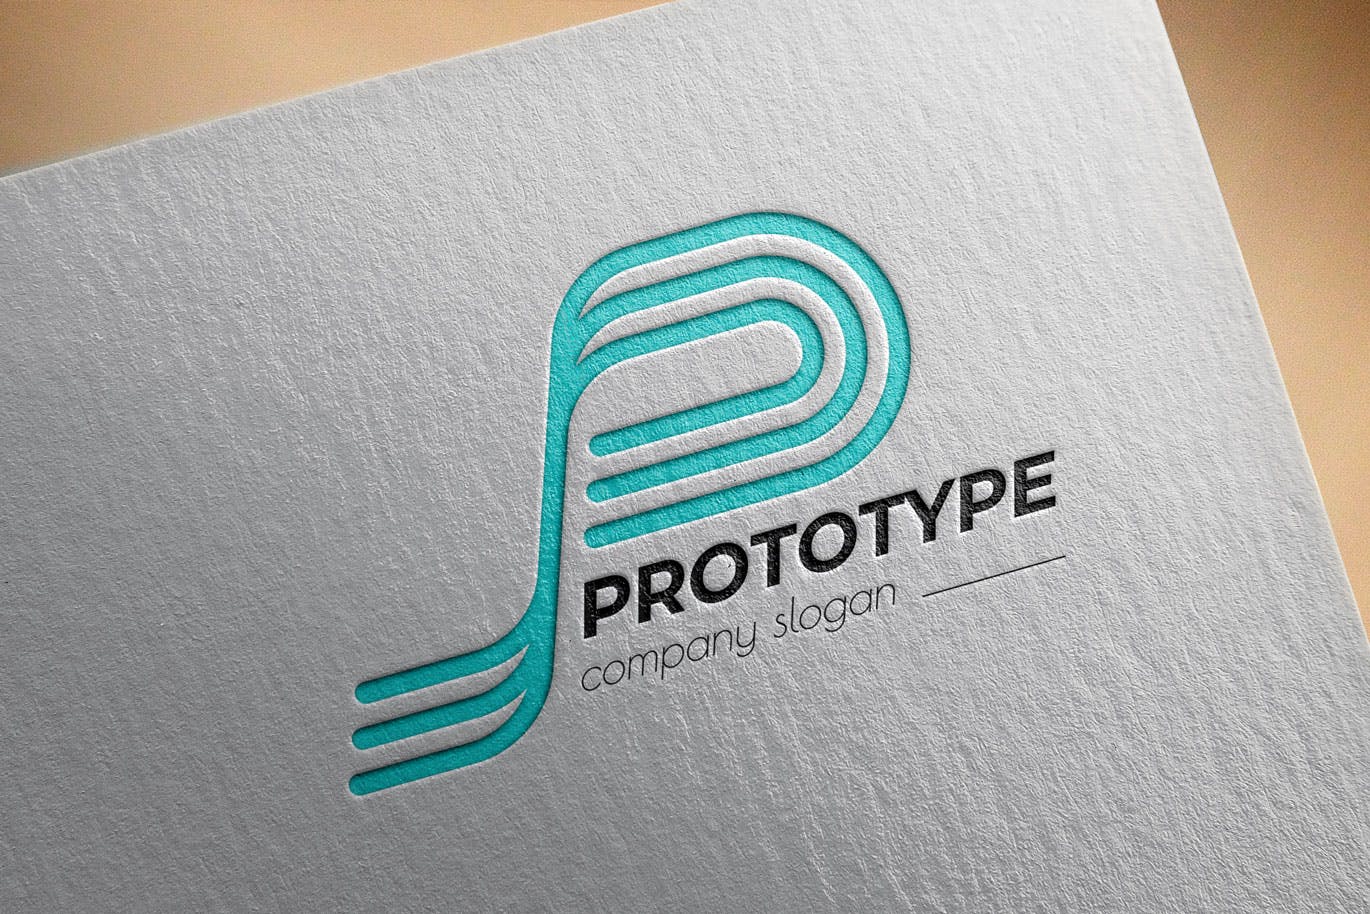 原型设计主题创意图形Logo设计16图库精选模板 Prototype Creative Logo Template插图(2)